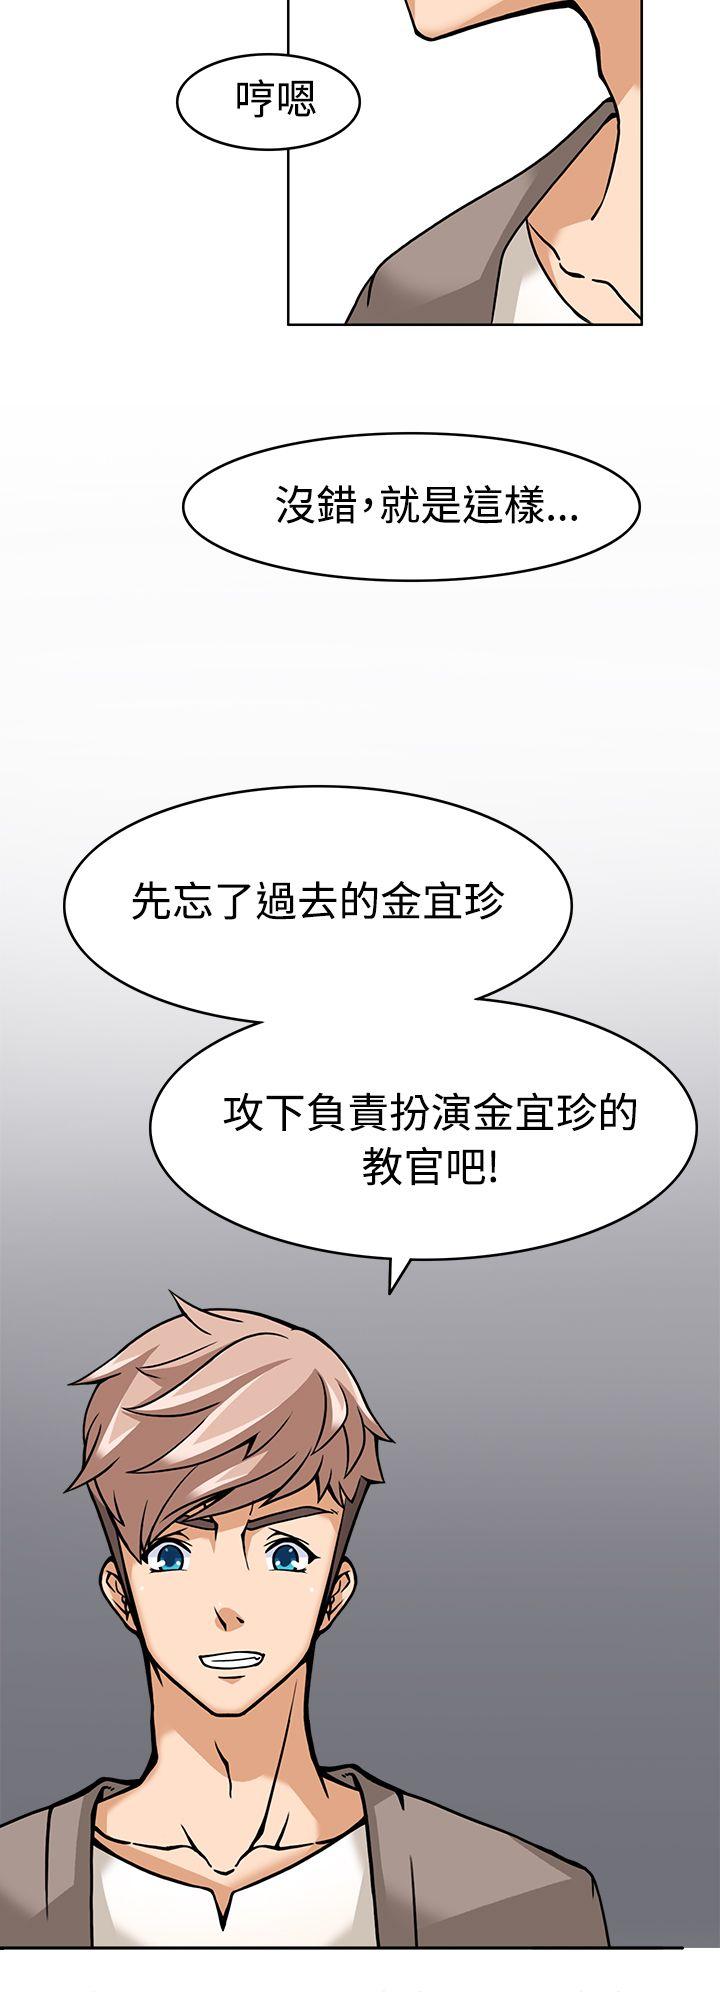 韩国污漫画 軍人的誘惑 第5话 20